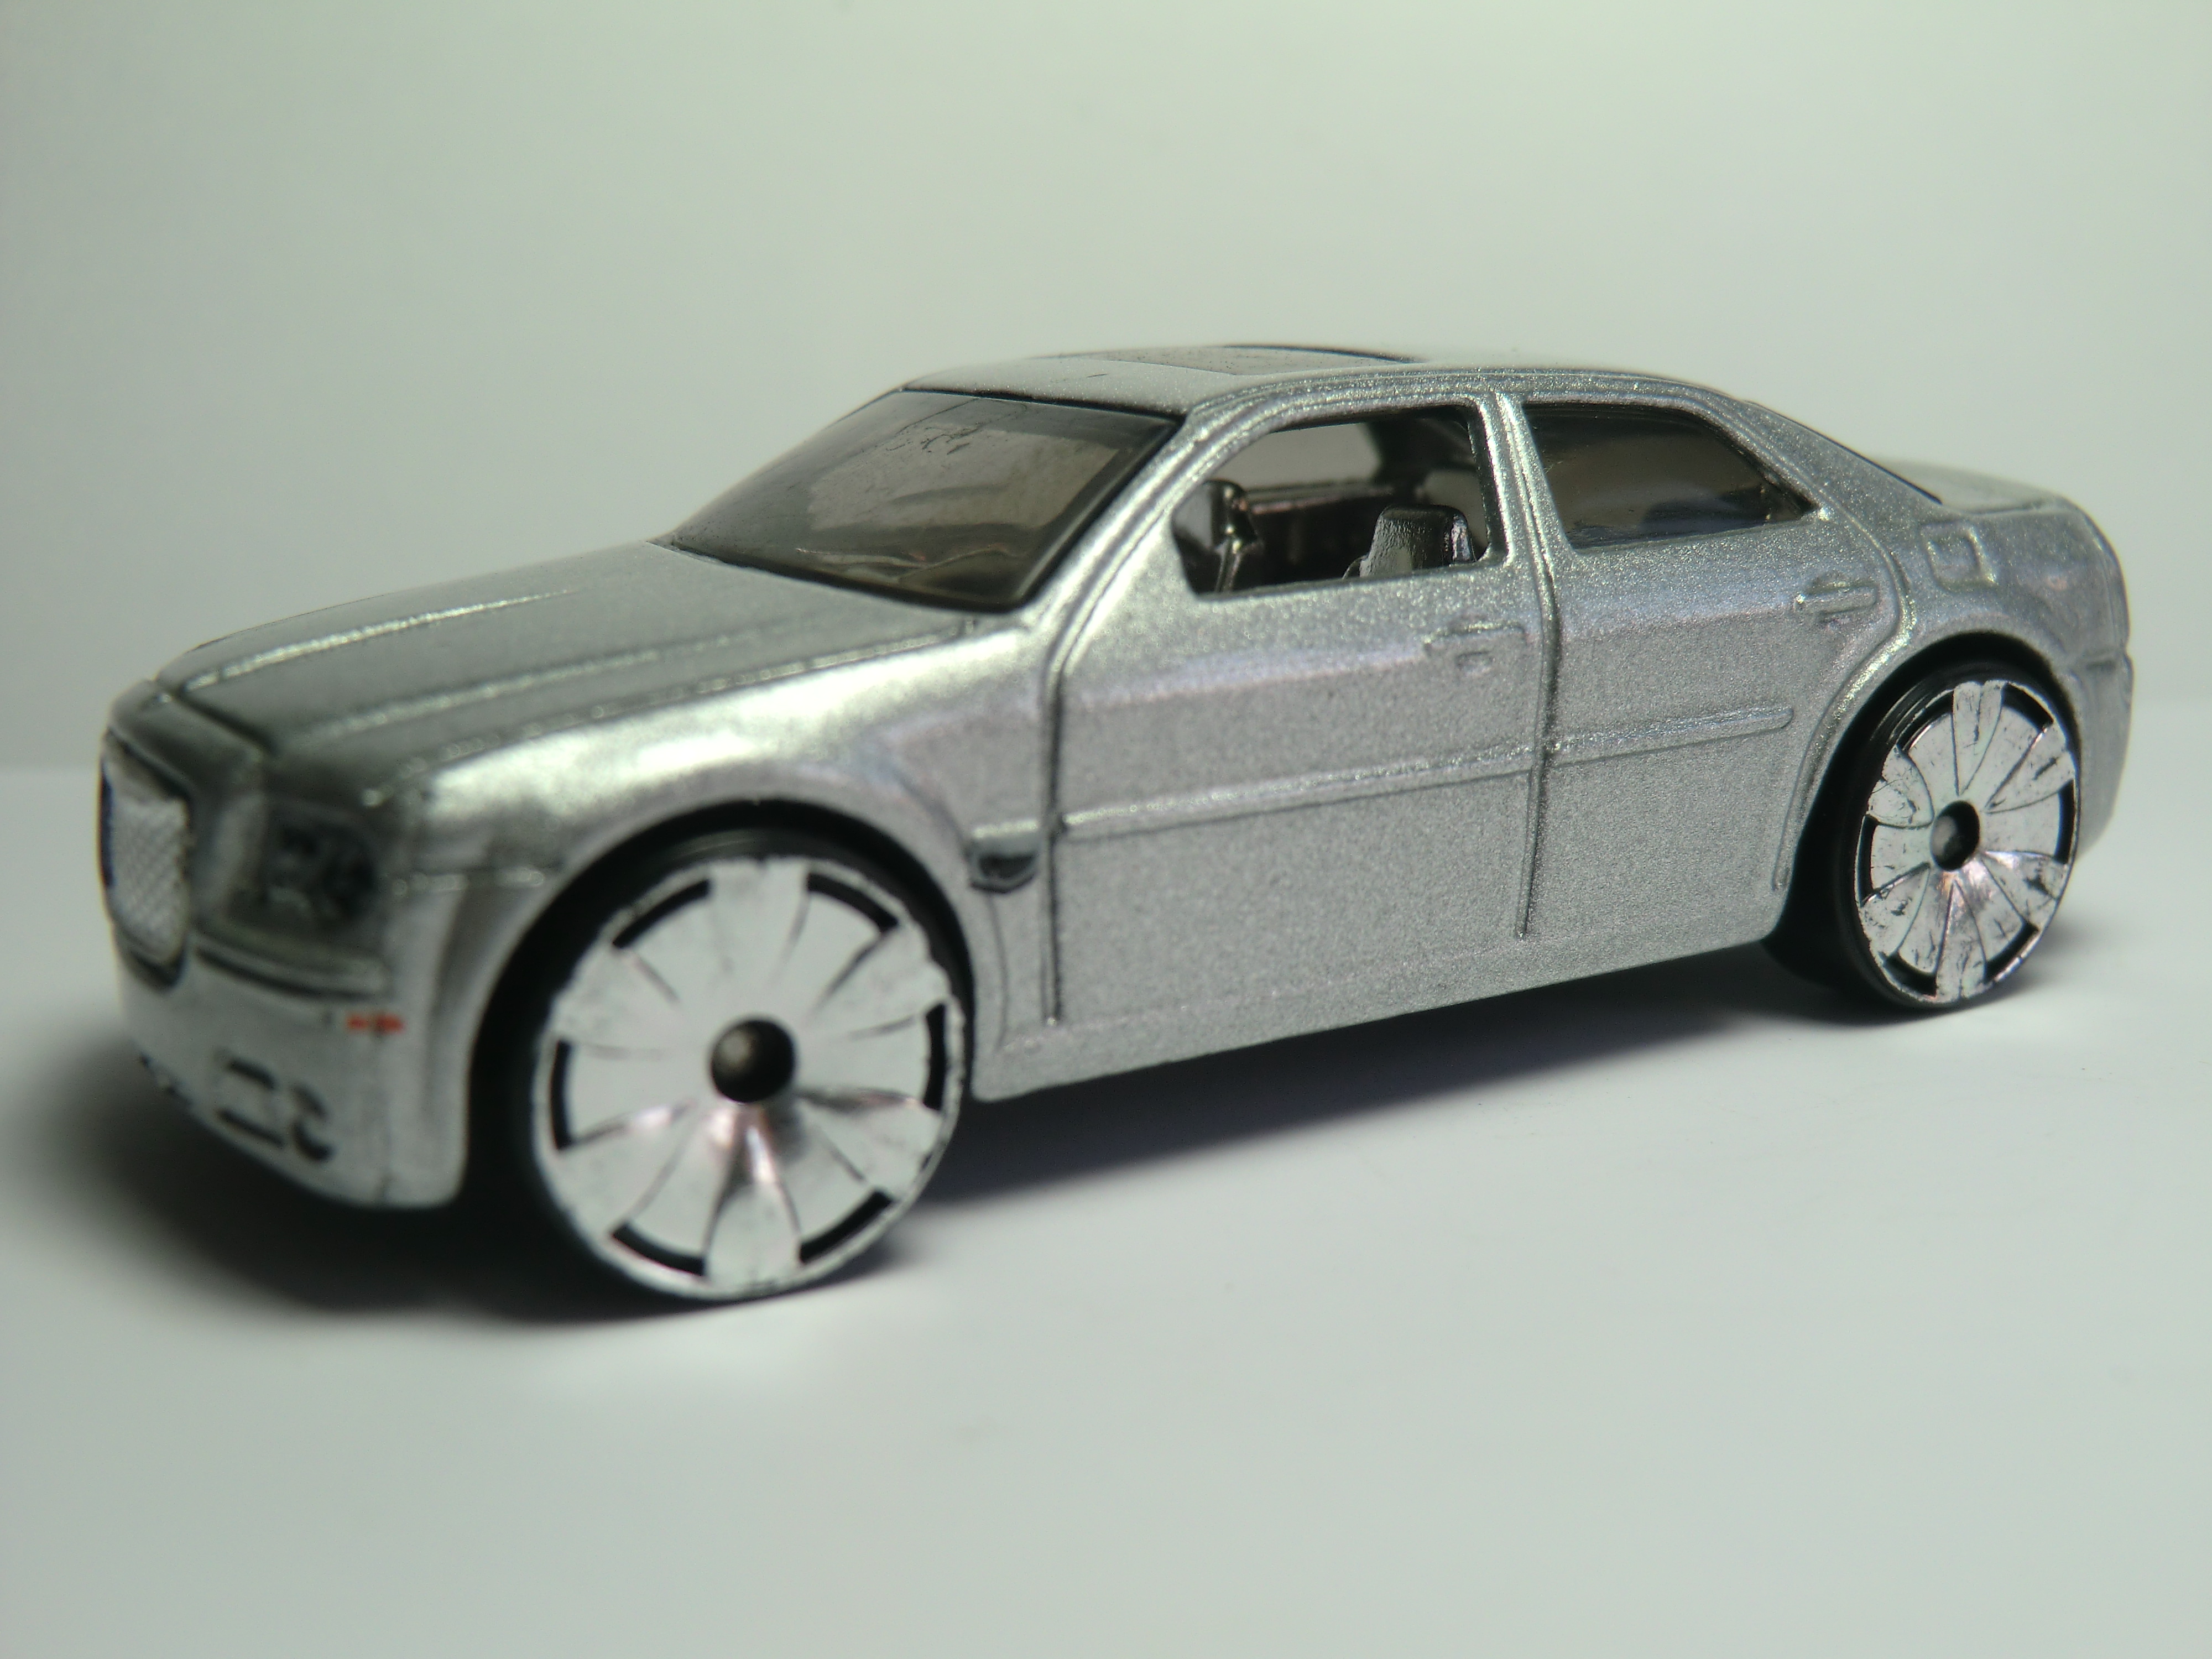 Chrysler 300 hemi wiki